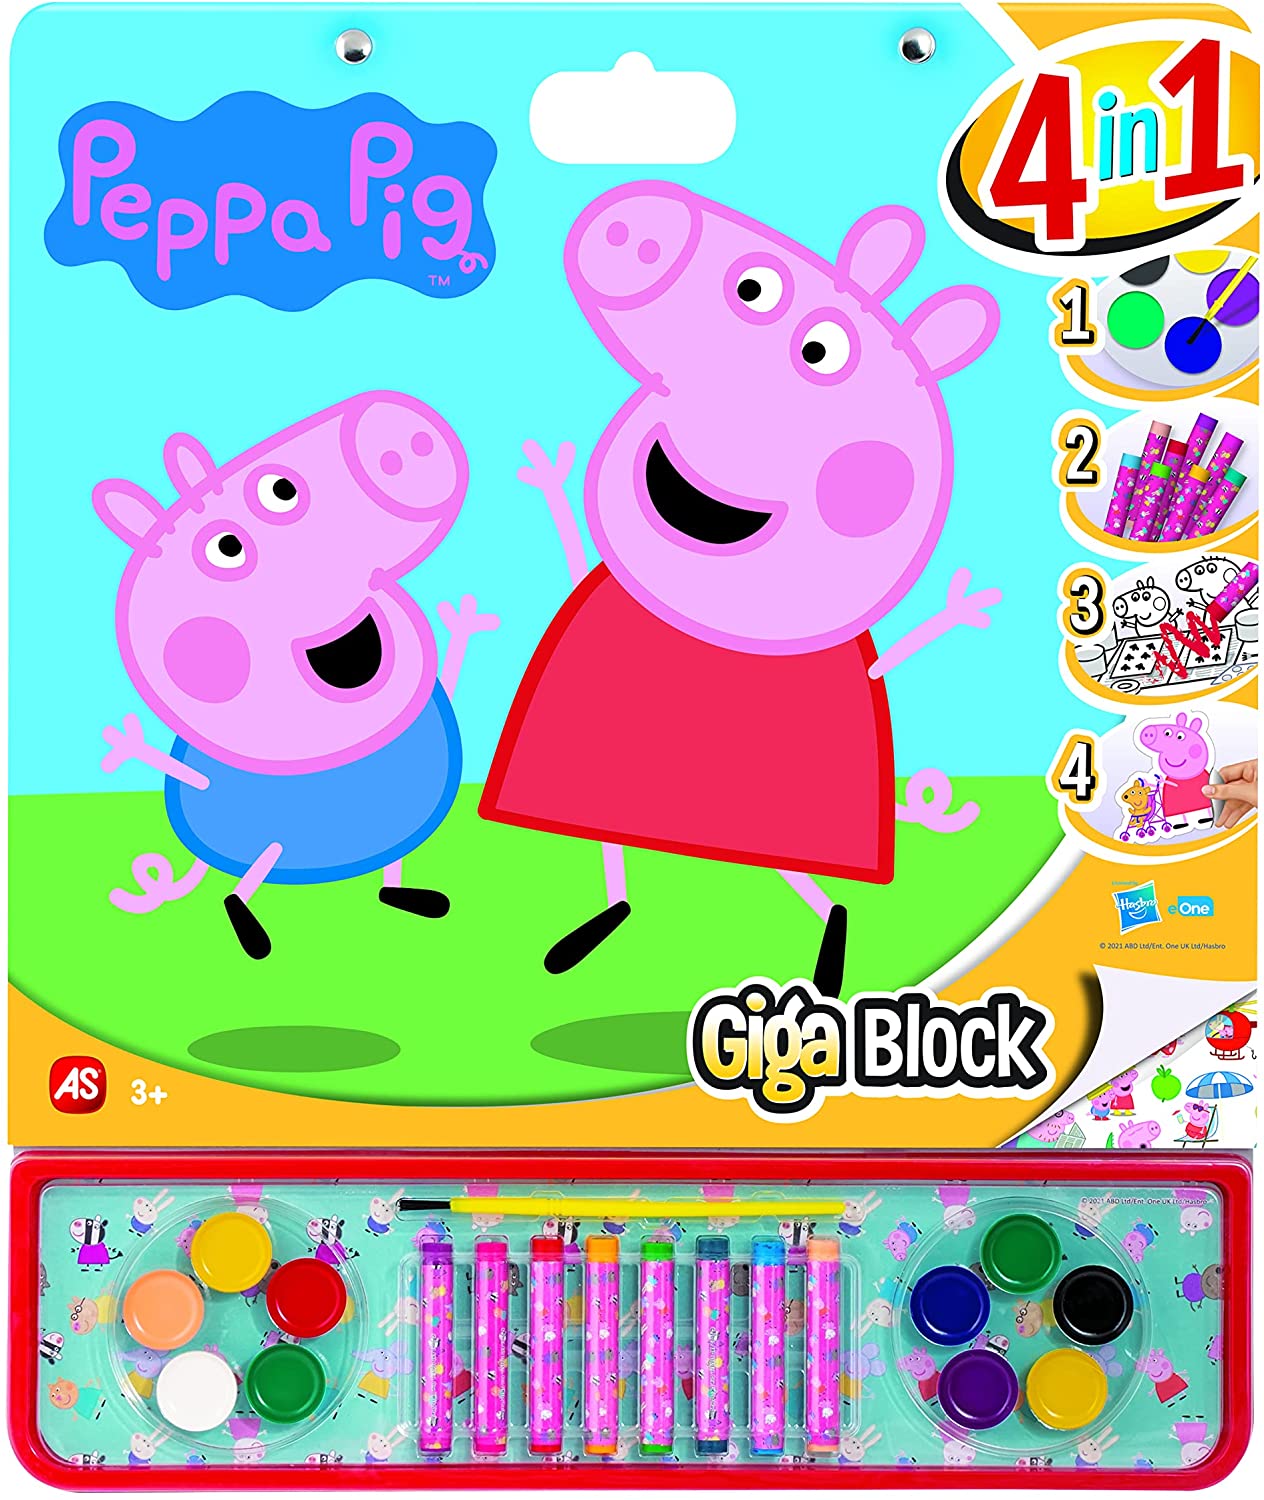 GIGA BLOCK PEPPA PIG 4EN1 21867